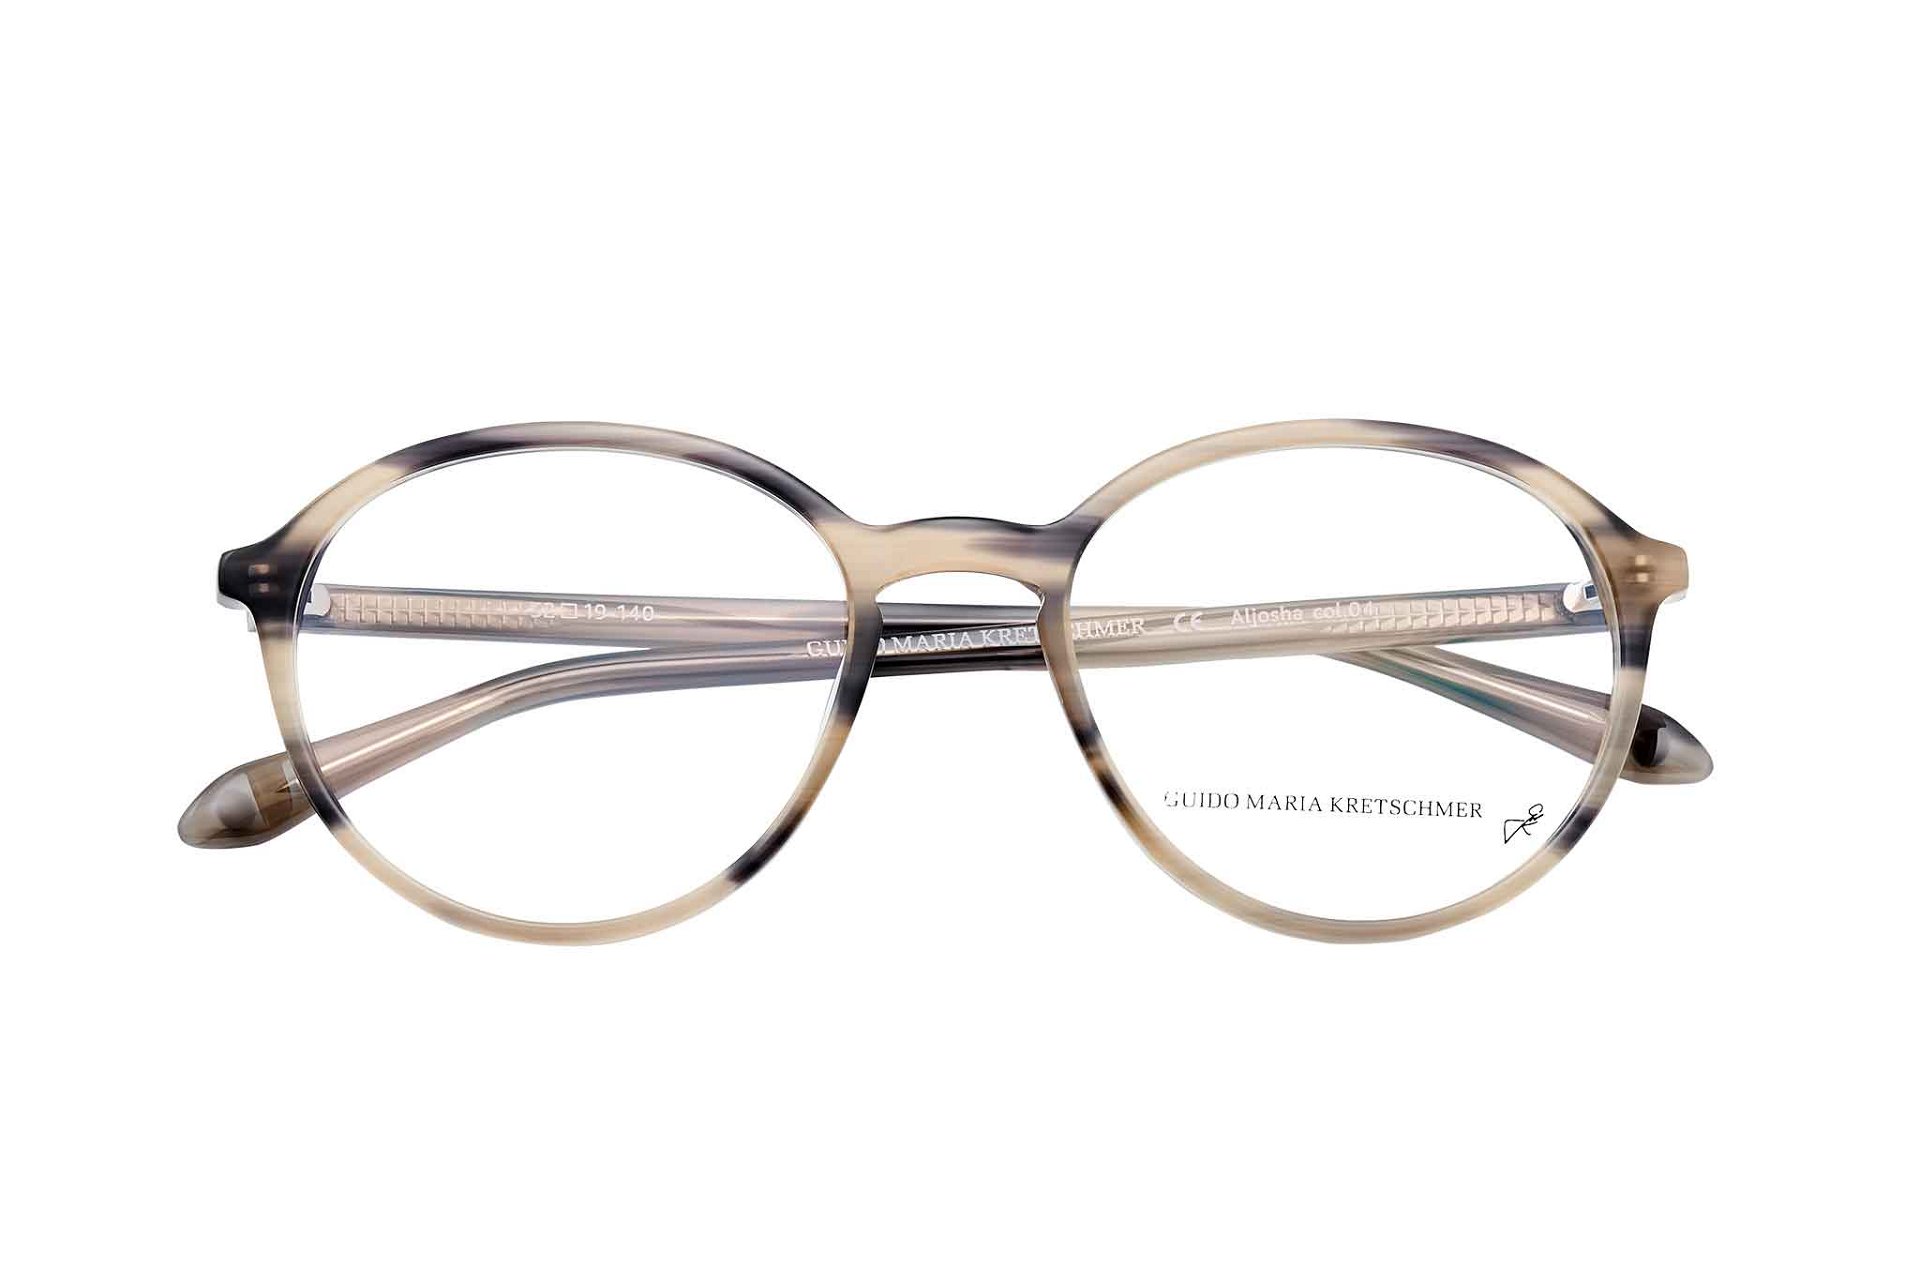 Brillen von Edel-Optics
»Mein Favorit gegen müde Augen sind die Sehbrillen mit Blaufilter, die mir gerade im vergangenen Jahr die vielen Videokonferenzen sehr erleichtert haben. Meine Sonnenbrillen sind für mich ein perfektes Accessoire und hilfreicher Begleiter im Alltag.«